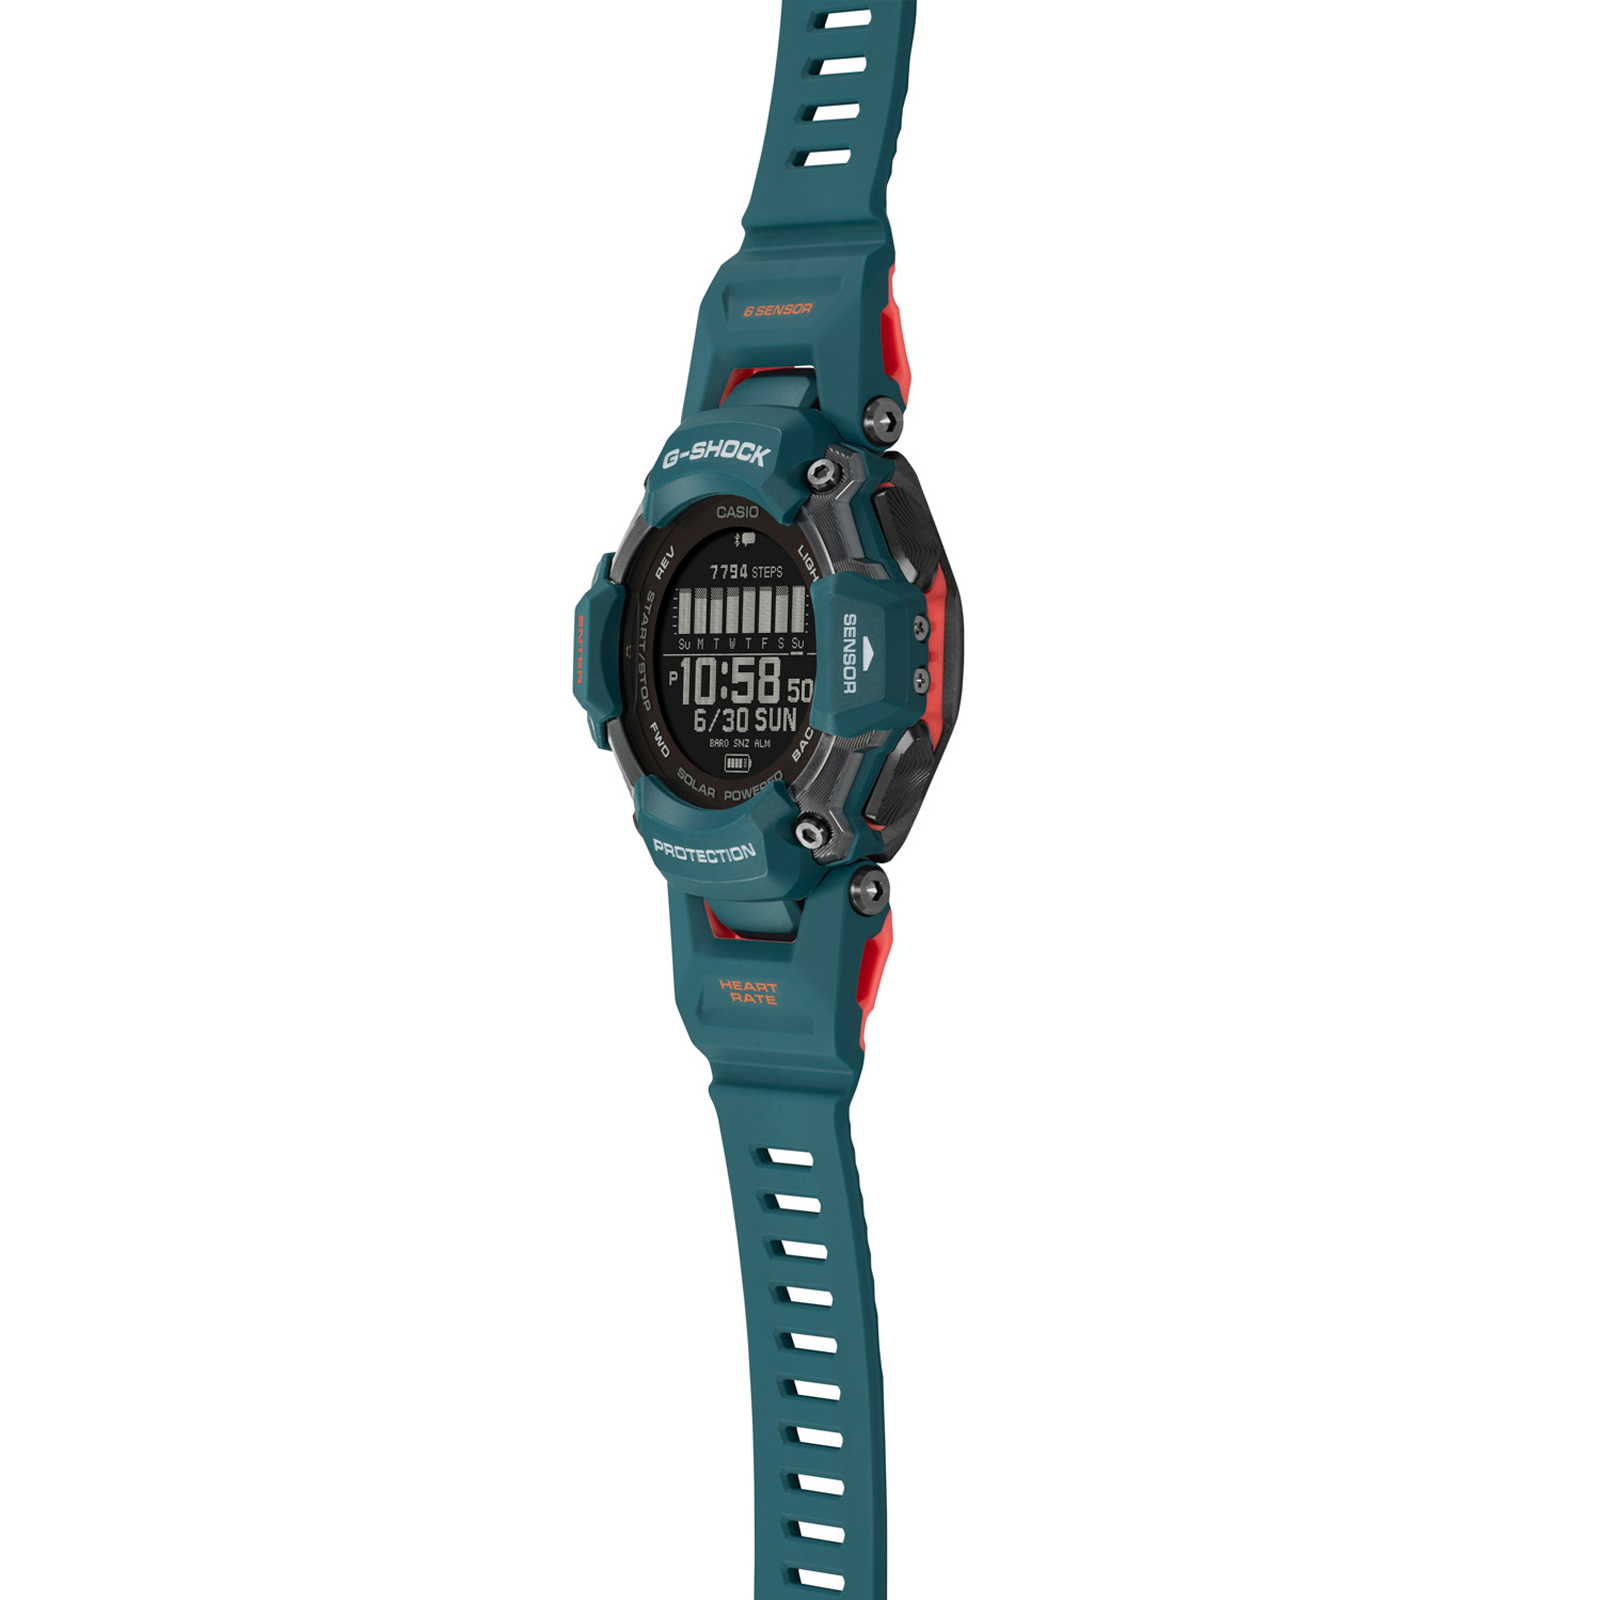 Reloj G-SHOCK GBD-H2000-2D Resina Hombre Azul Verdoso